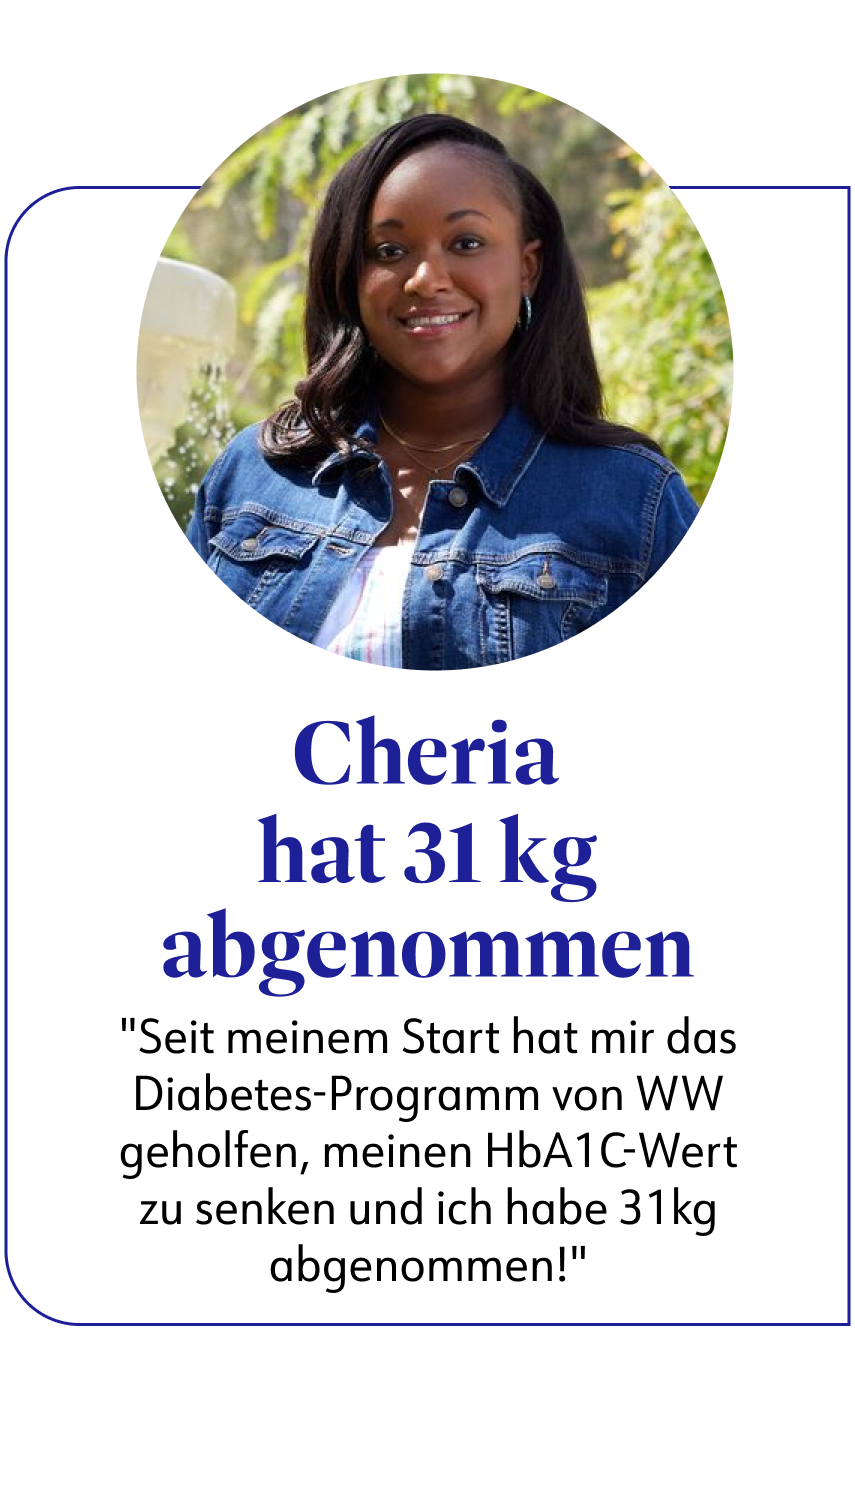 Cheria hat mit WW 31 kg abgenommen. Sie berichtet: "Das Diabetesprogramm hat mir geholfen, meinen HbA1c-Wert zu senken.